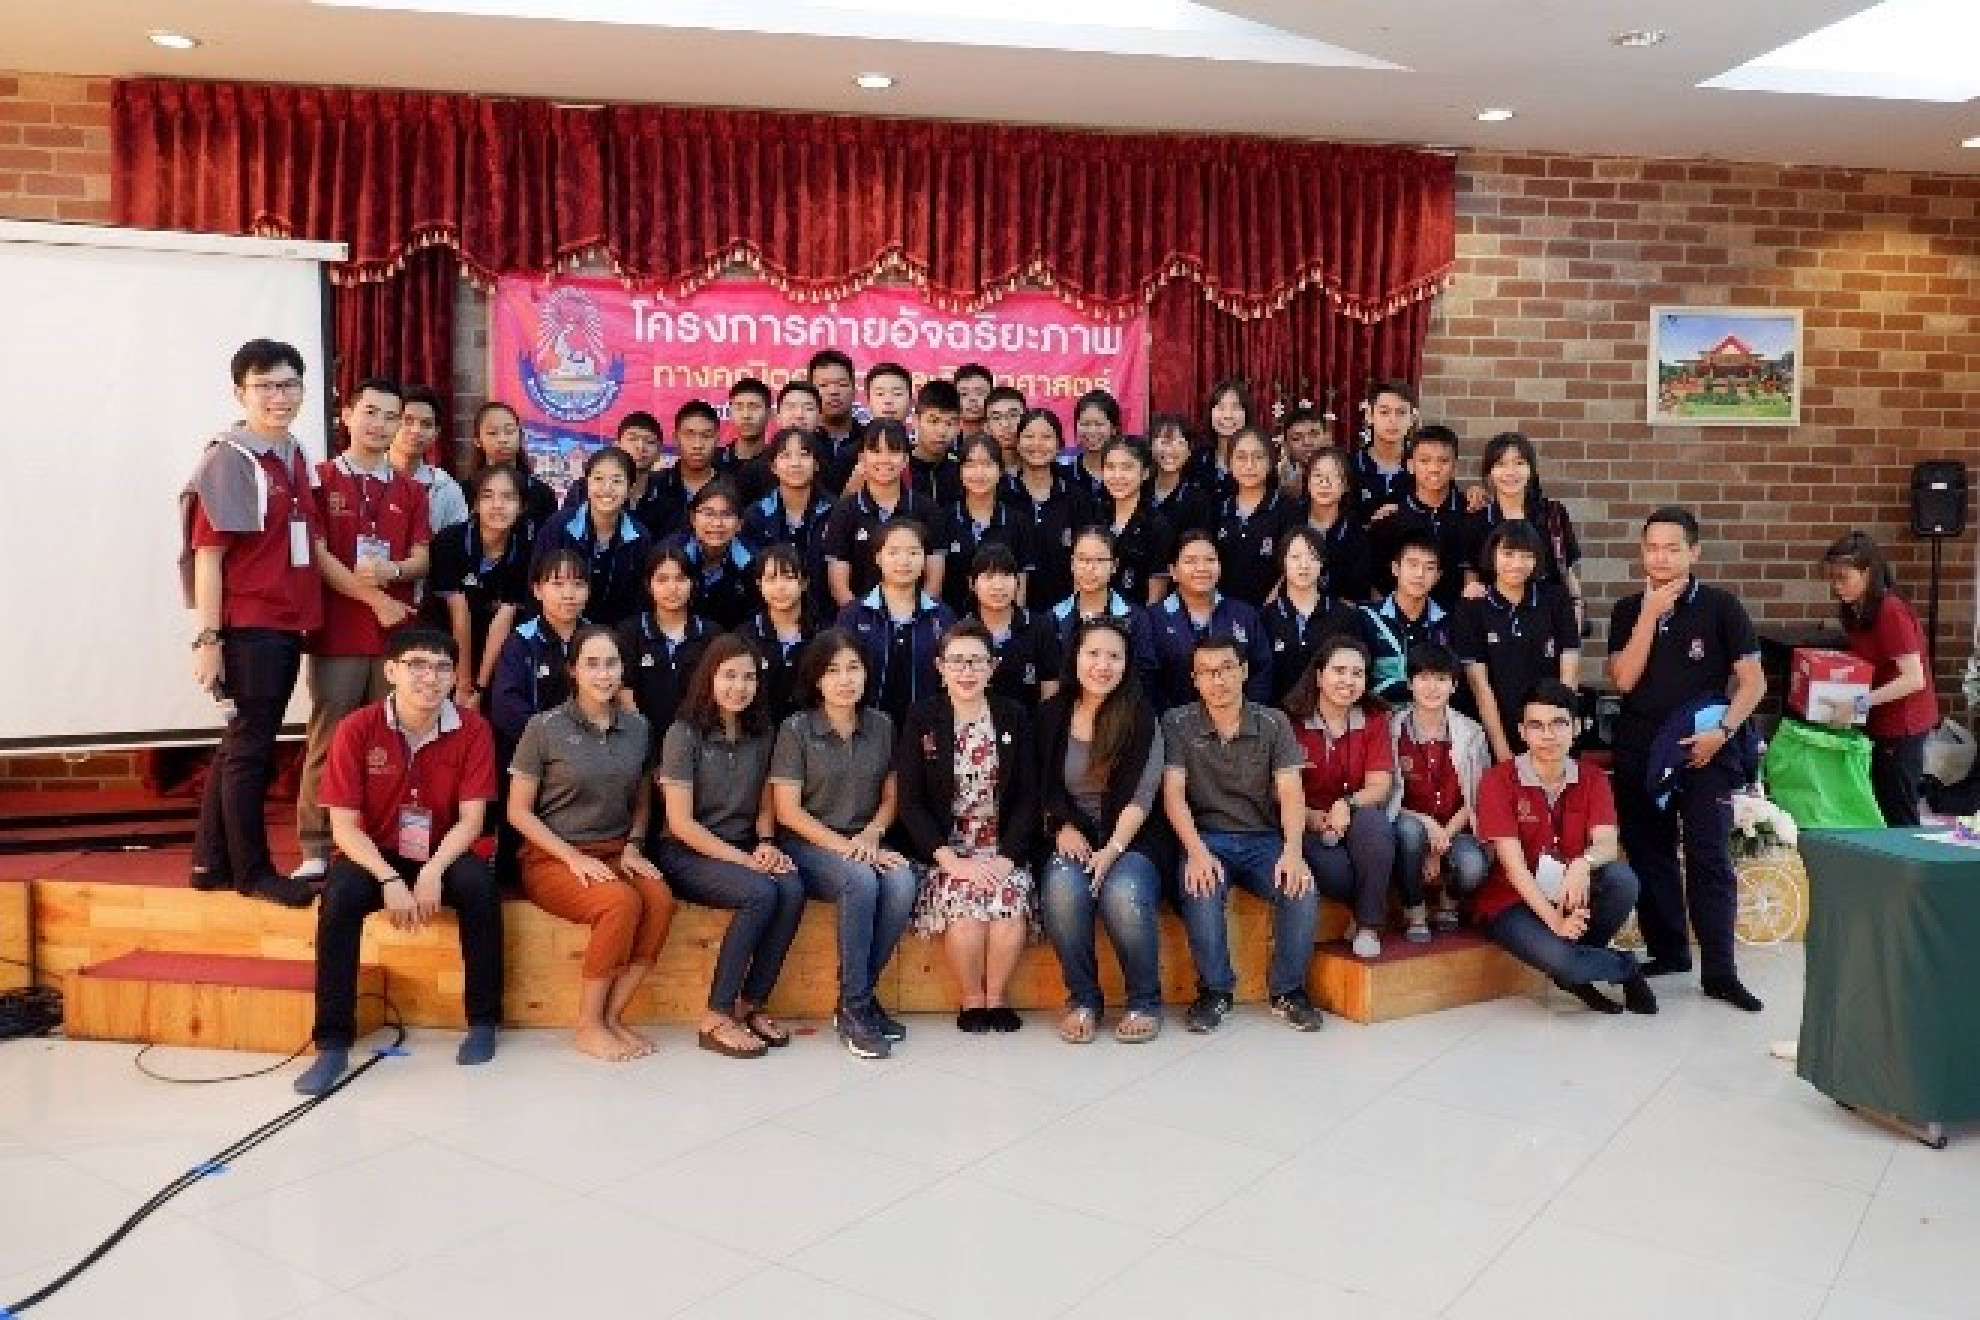 เข้าร่วมโครงการค่ายอัจฉริยภาพทางคณิตศาสตร์และวิทยาศาสตร์
ณ โรงเรียนพรหมานุสรณ์ จังหวัดเพชรบุรี  วันที่ 25 - 27 มกราคม 2562